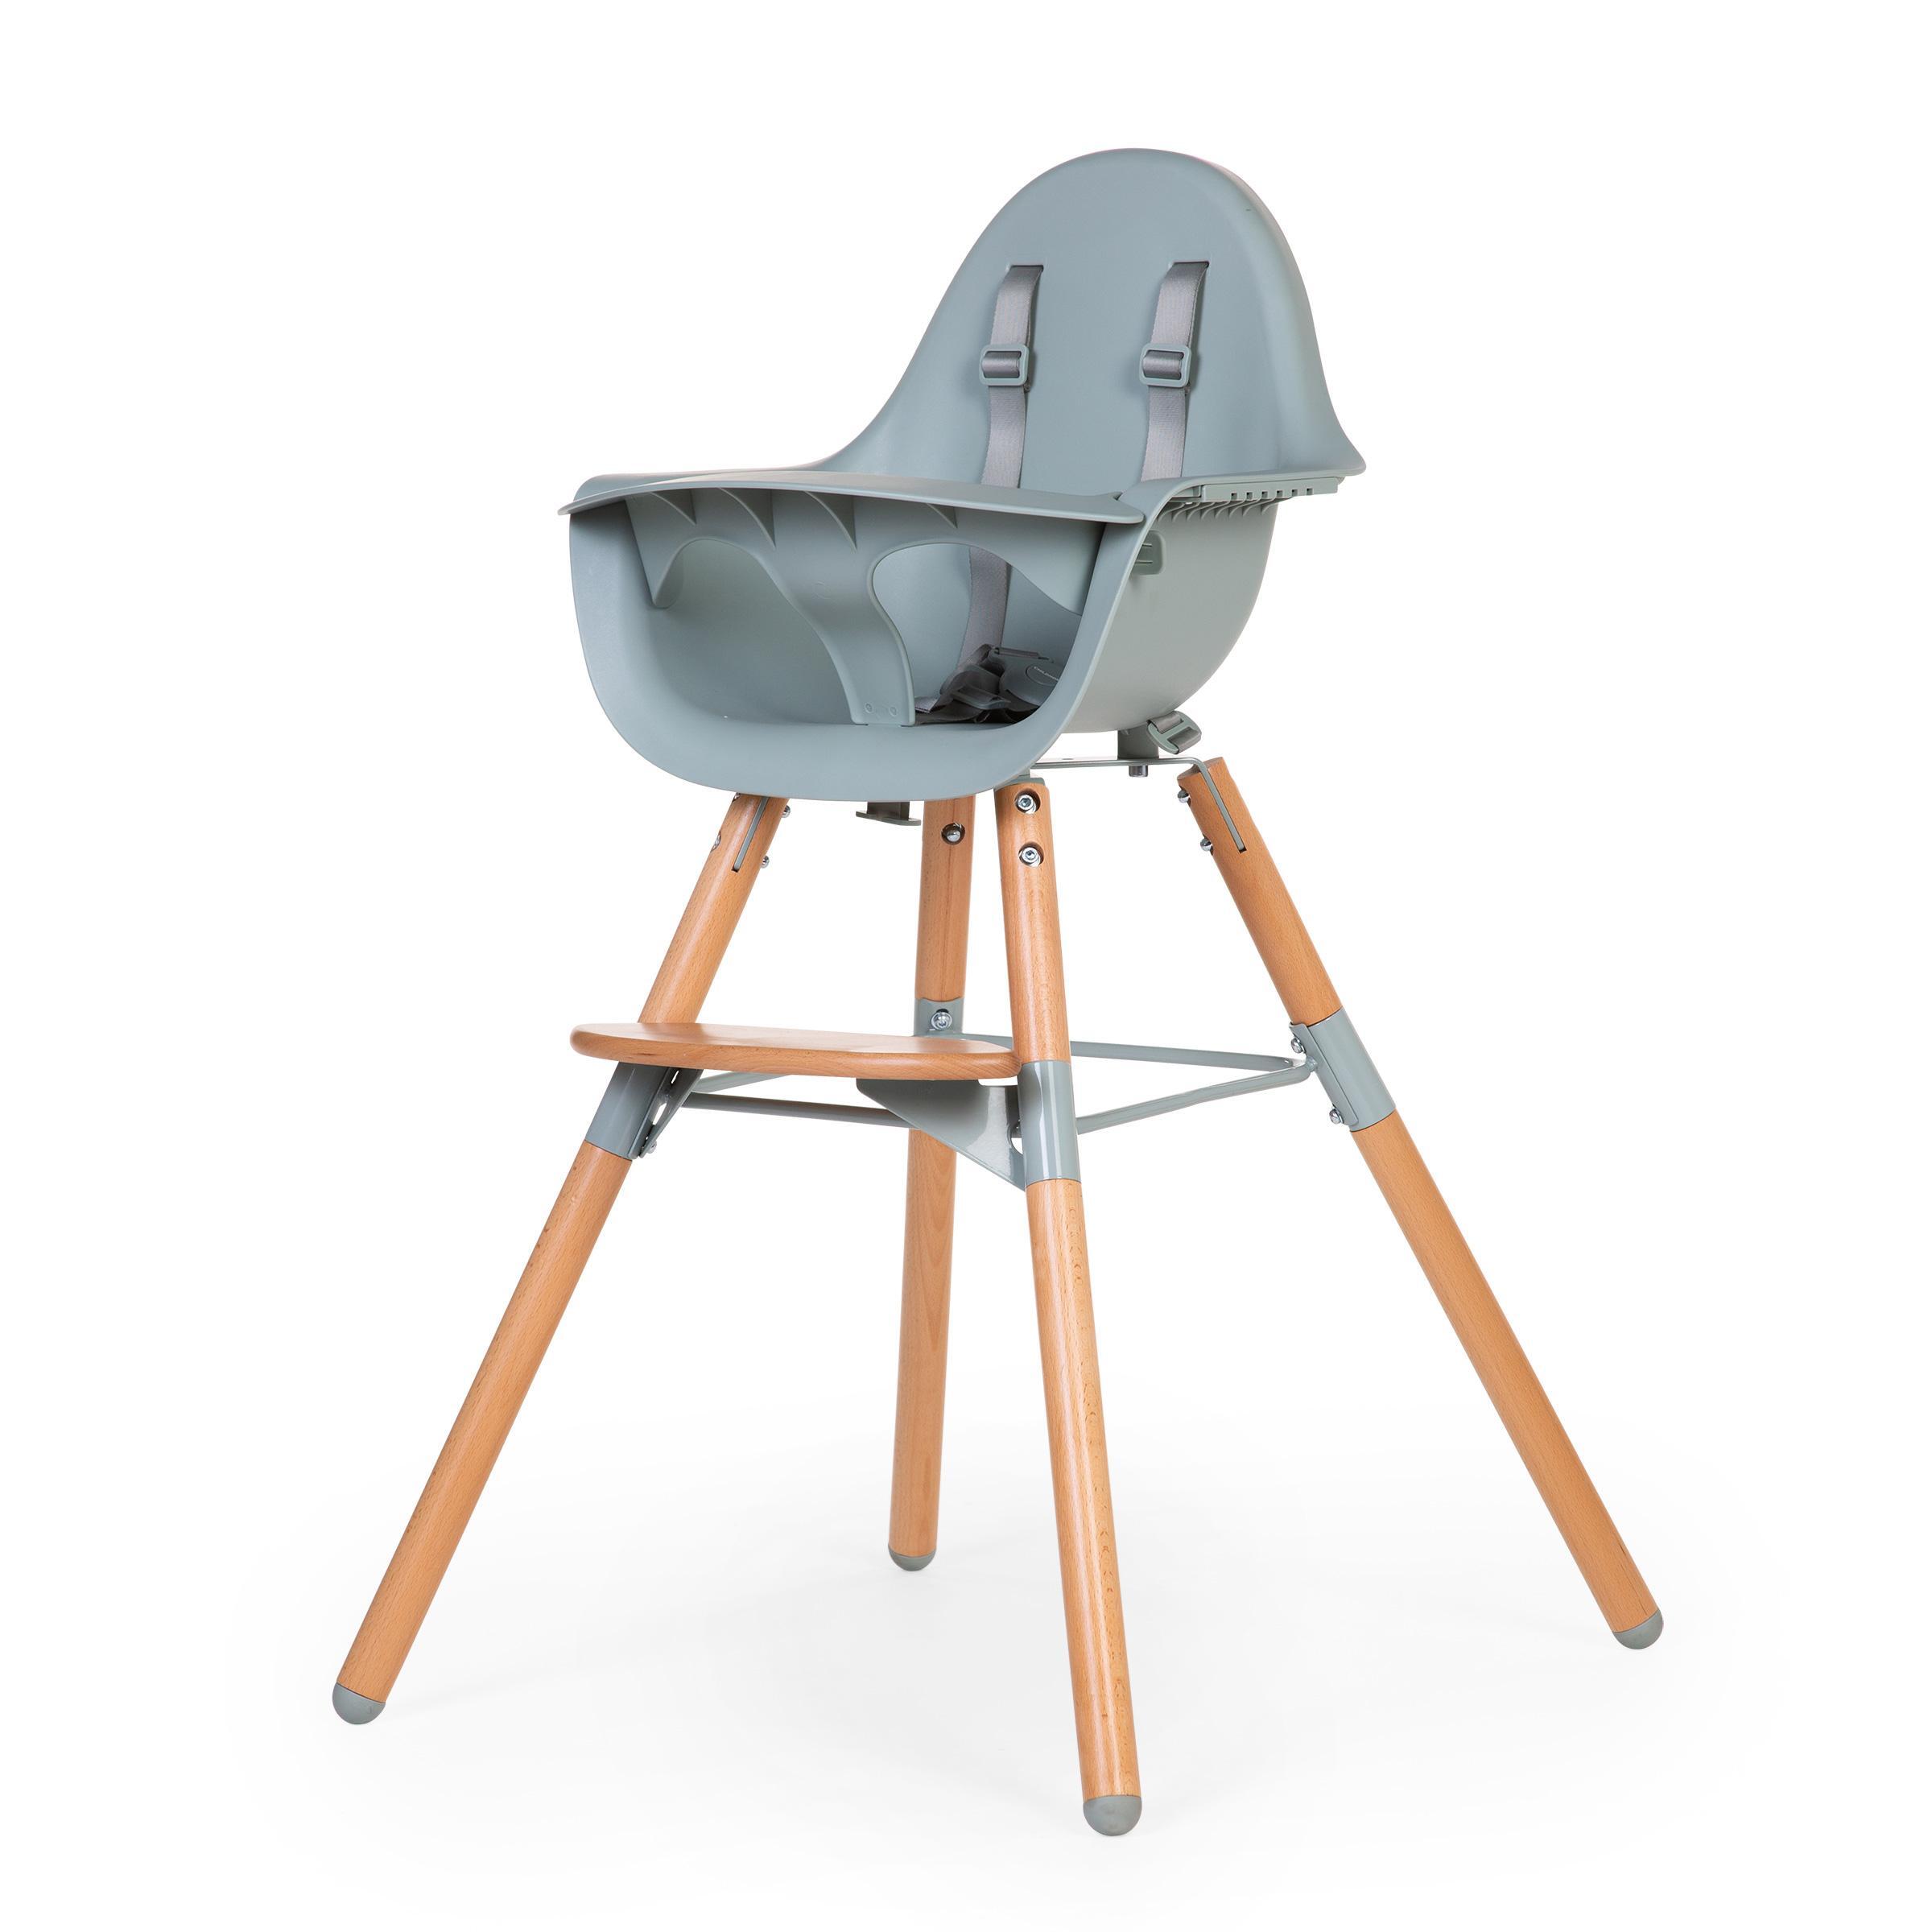 Childhome Evolu 2 Chair (2 butiker) se bästa priserna »